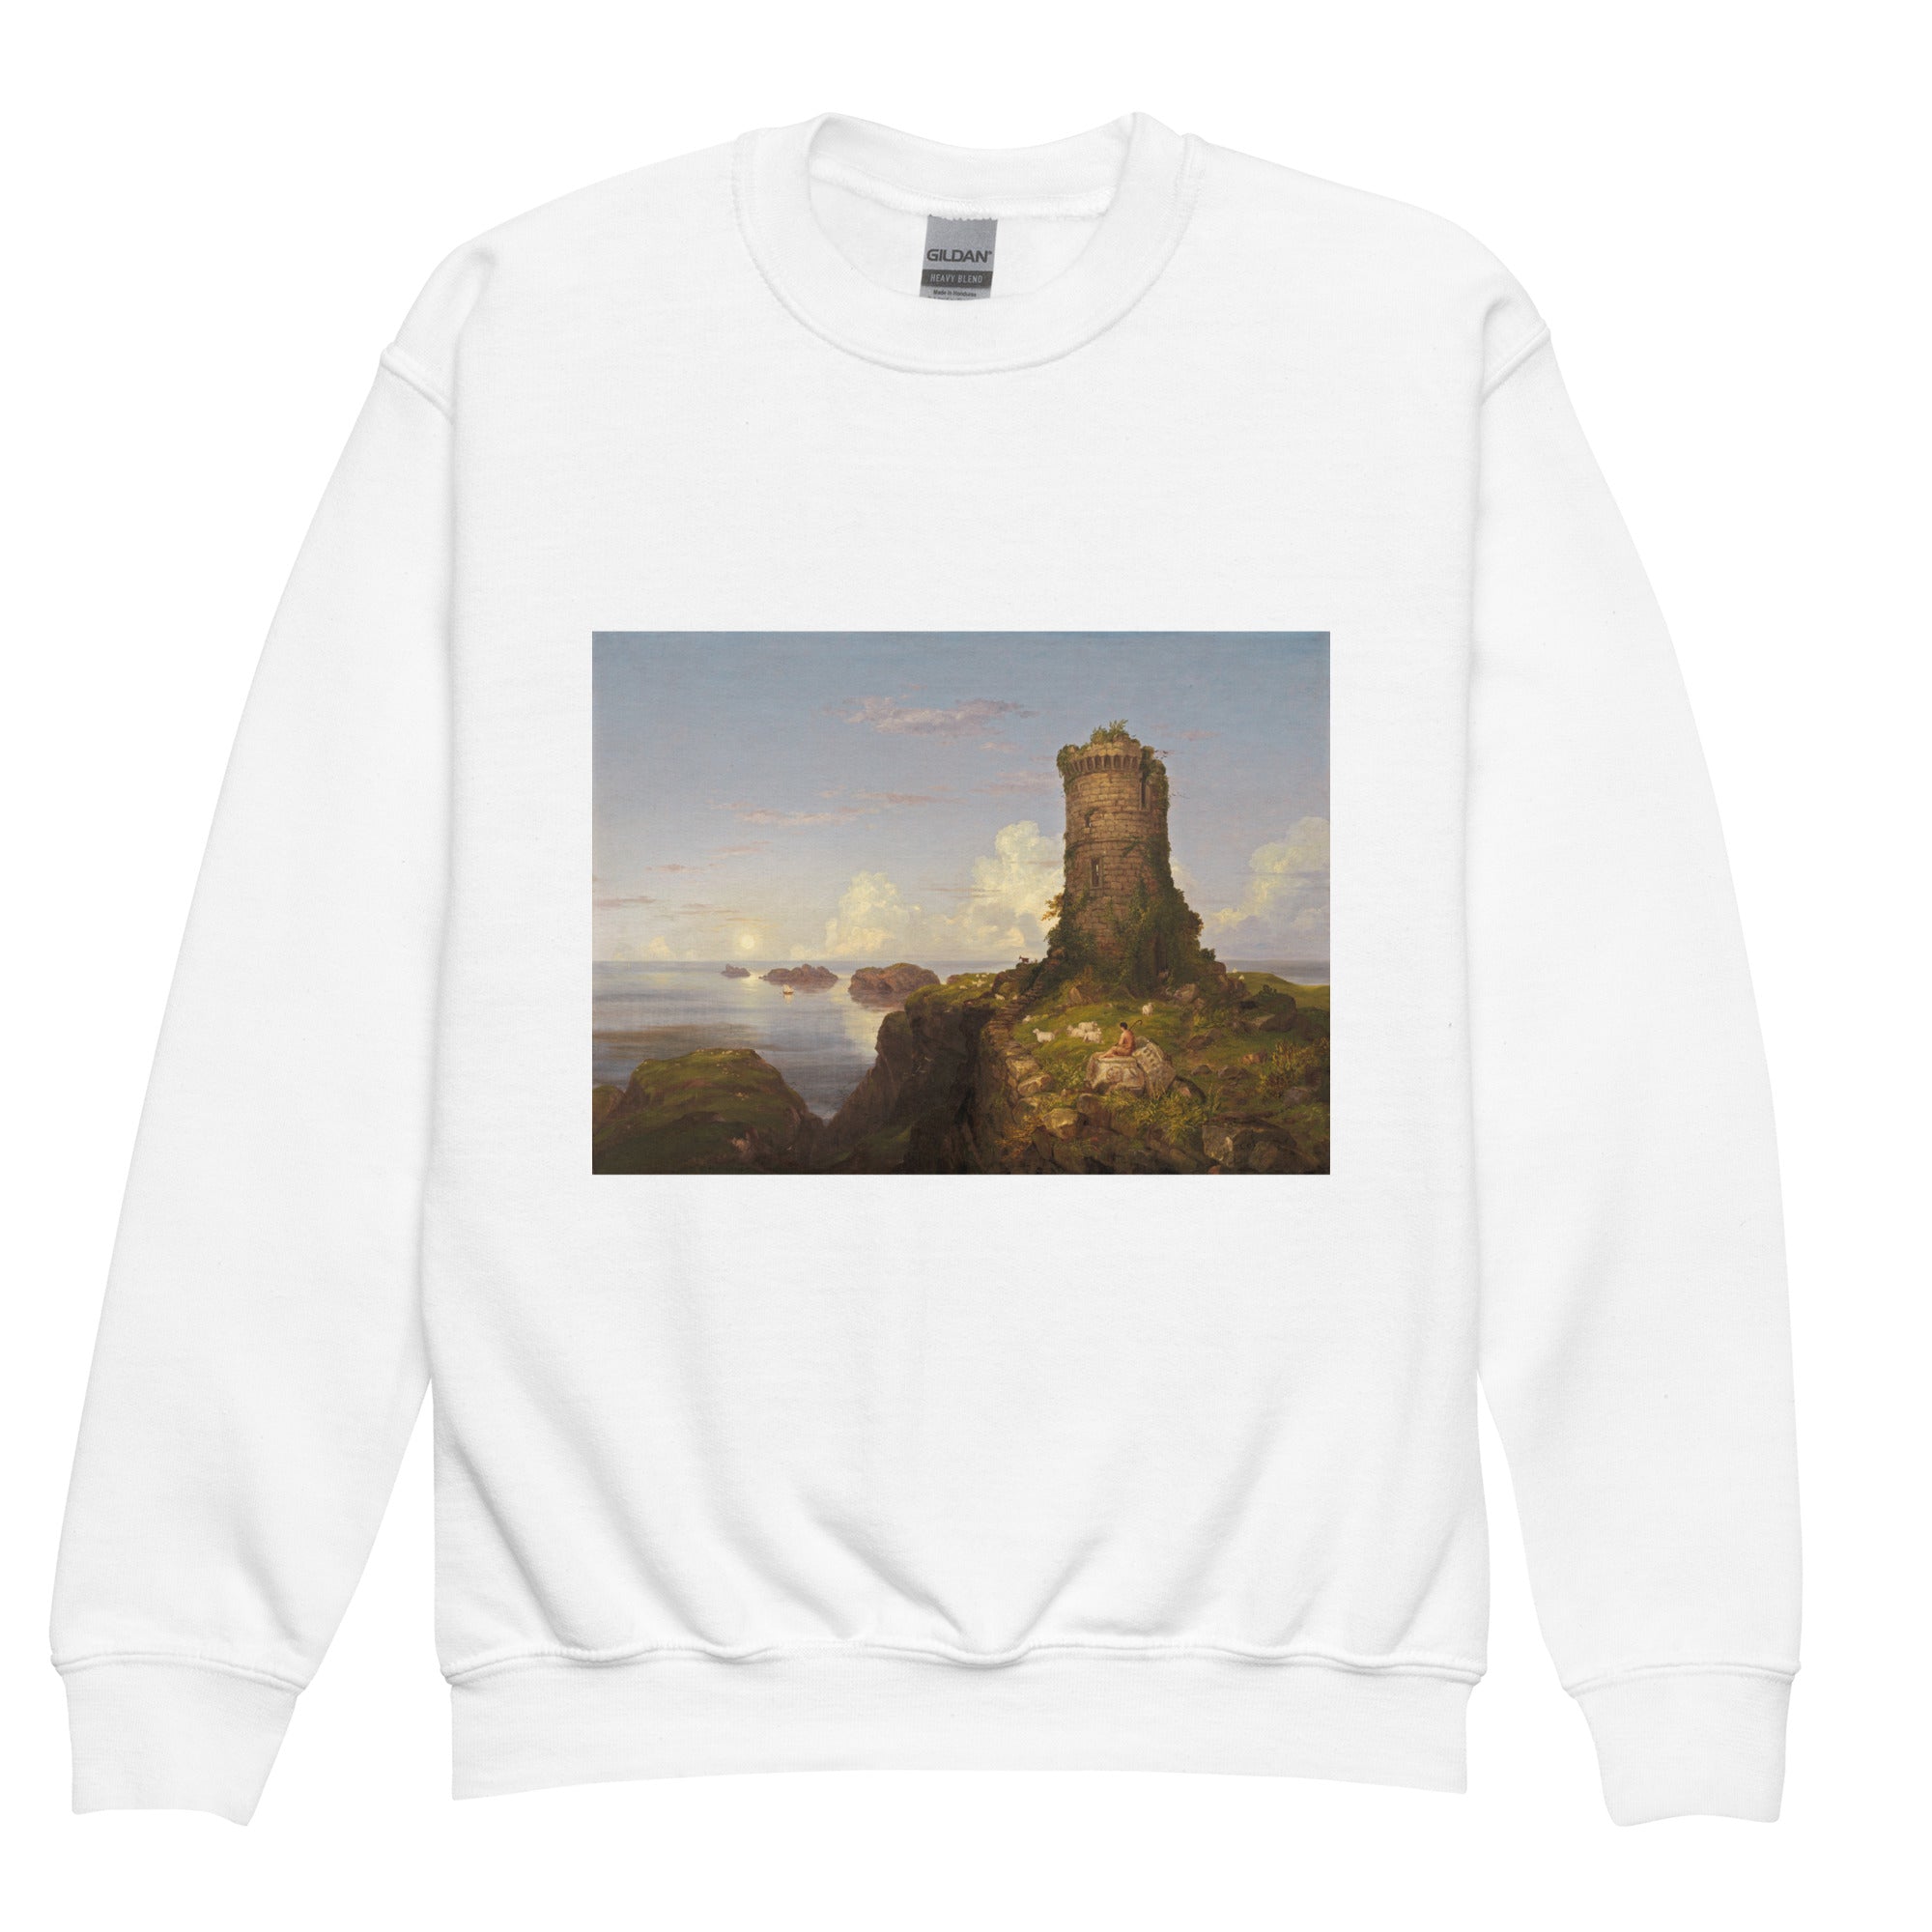 Thomas Cole „Italienische Küstenszene“ Berühmtes Gemälde Rundhals-Sweatshirt | Premium Jugend-Kunst-Sweatshirt